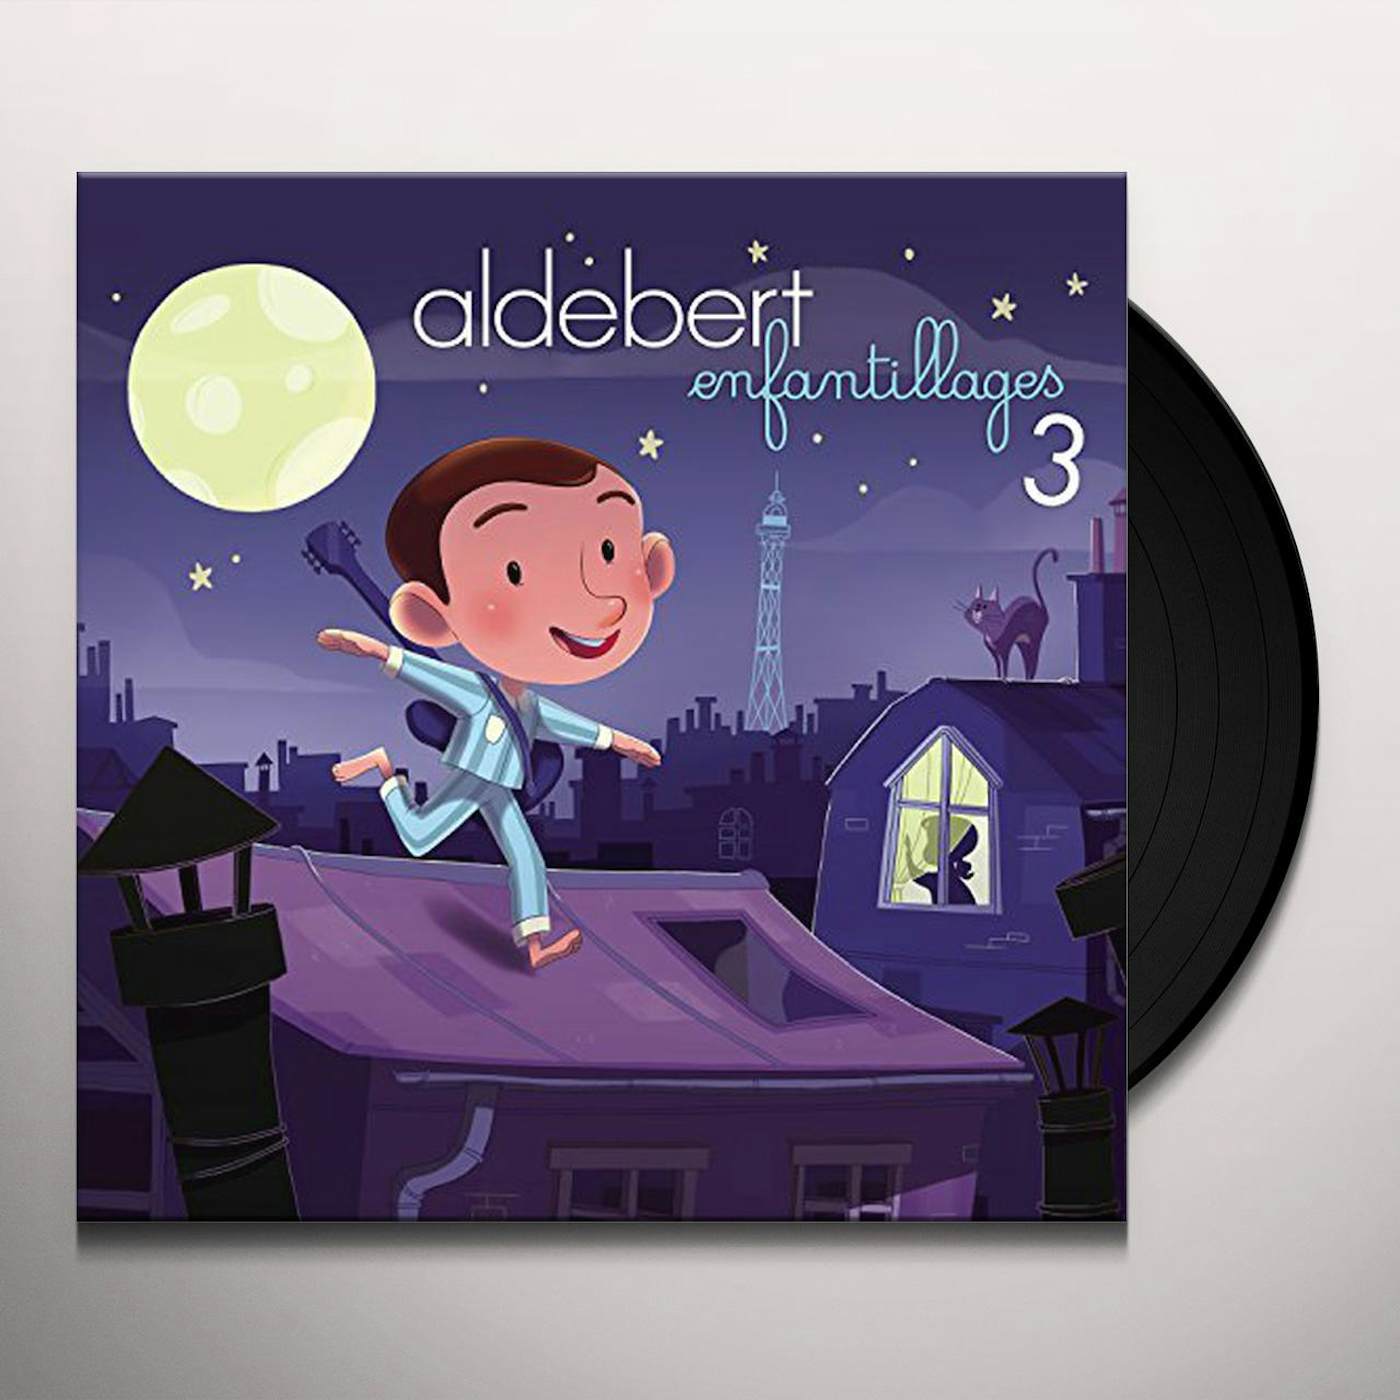 Aldebert Enfantillages 3 Vinyl Record